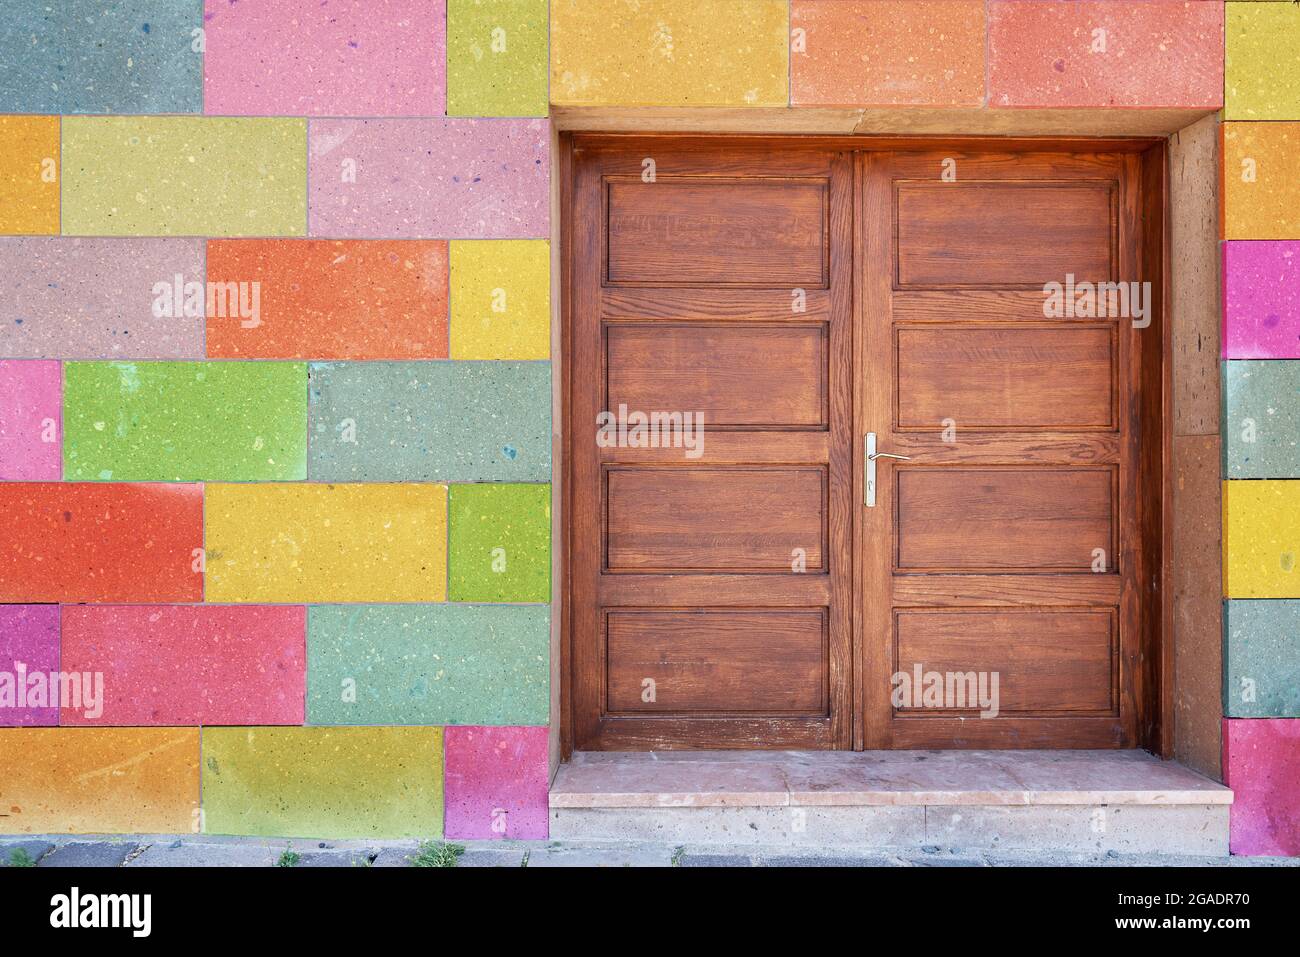 Bloques pintados fotografías e imágenes de alta resolución - Alamy